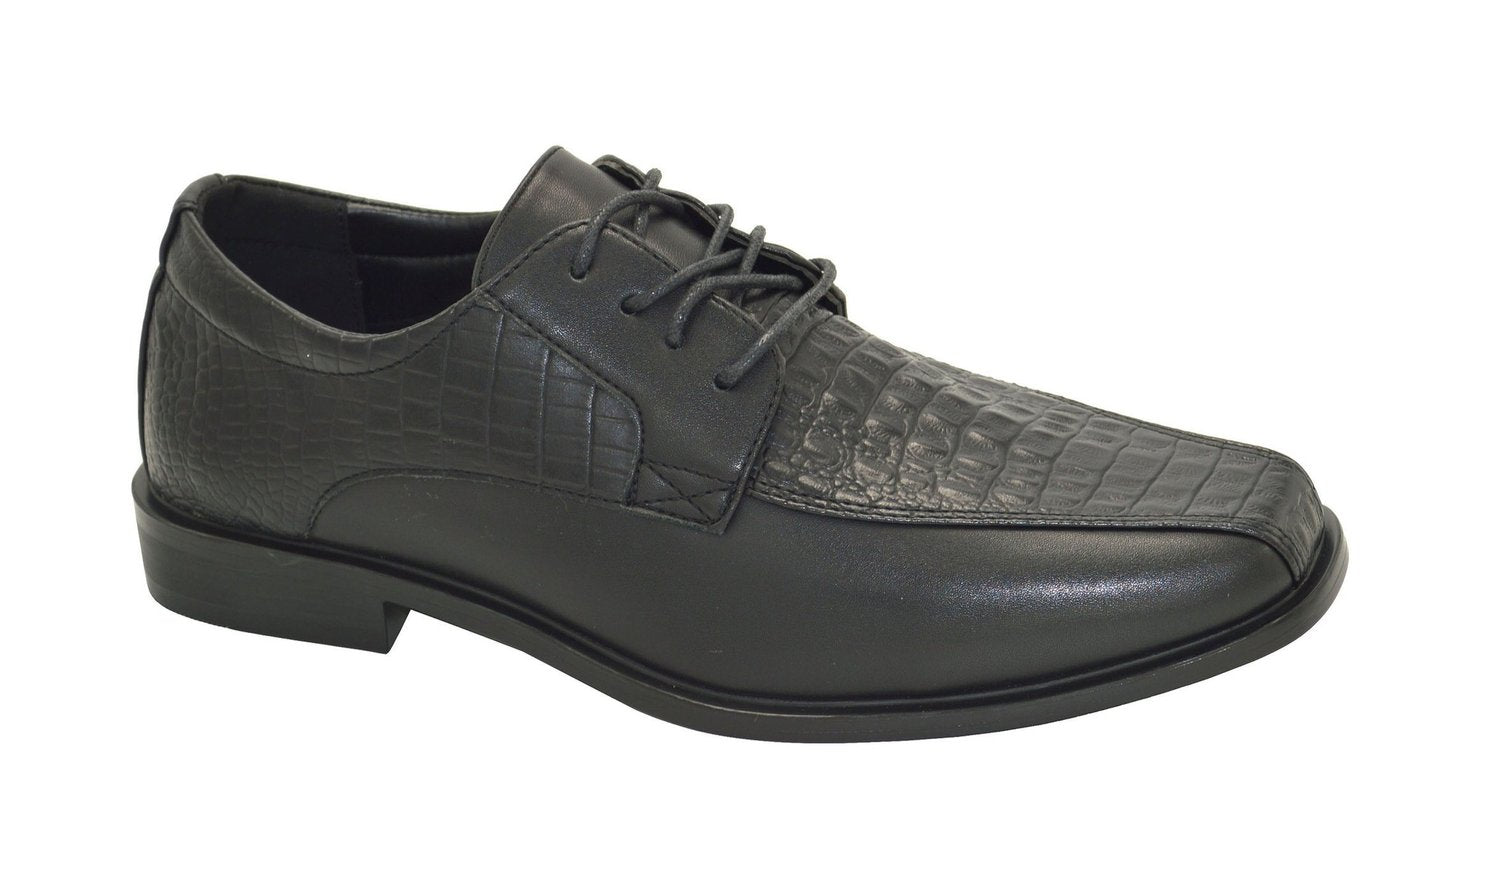 Wholesale Men's Shoes For Men Dress Derby Barclay NGM2